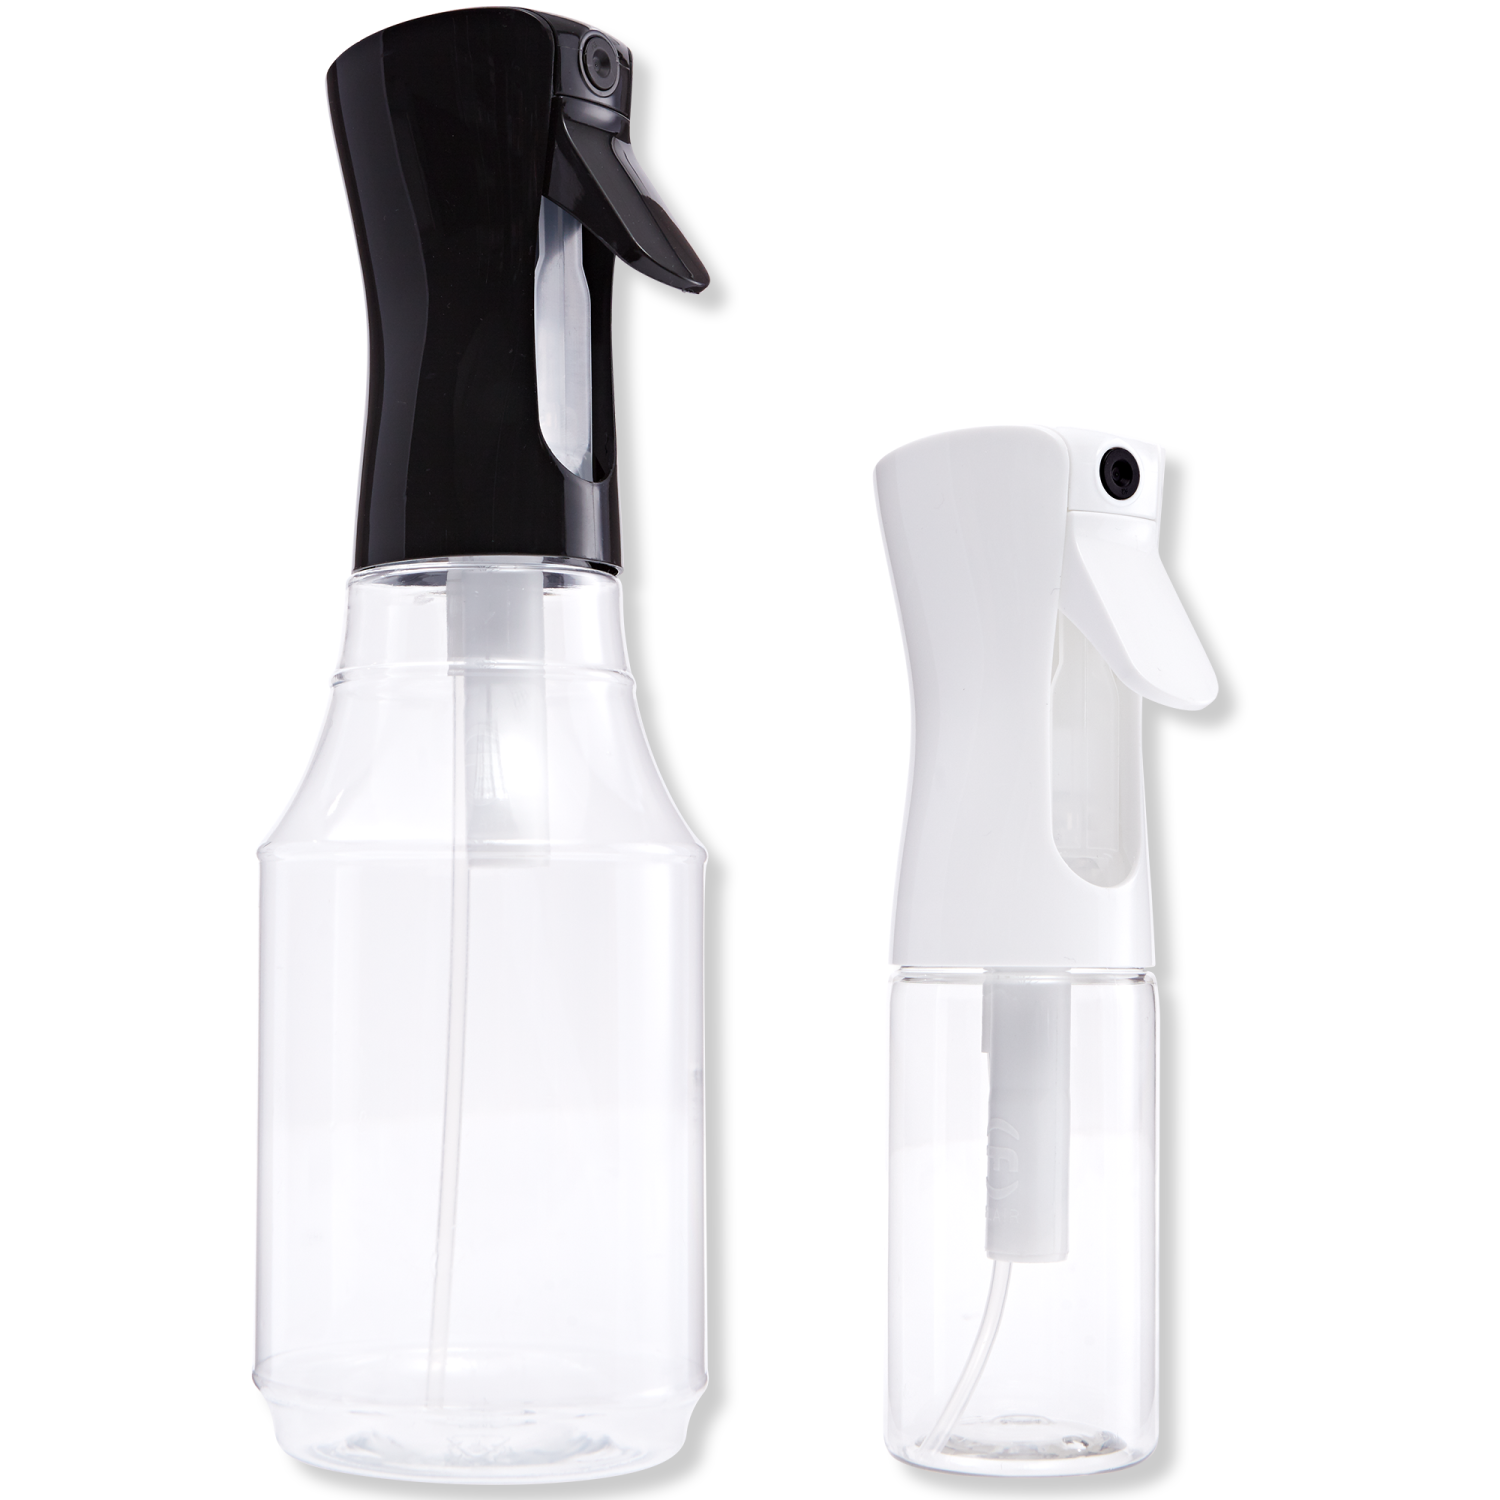 Mainstays 24oz Empty Plastic Spray Bottle, 1ct 